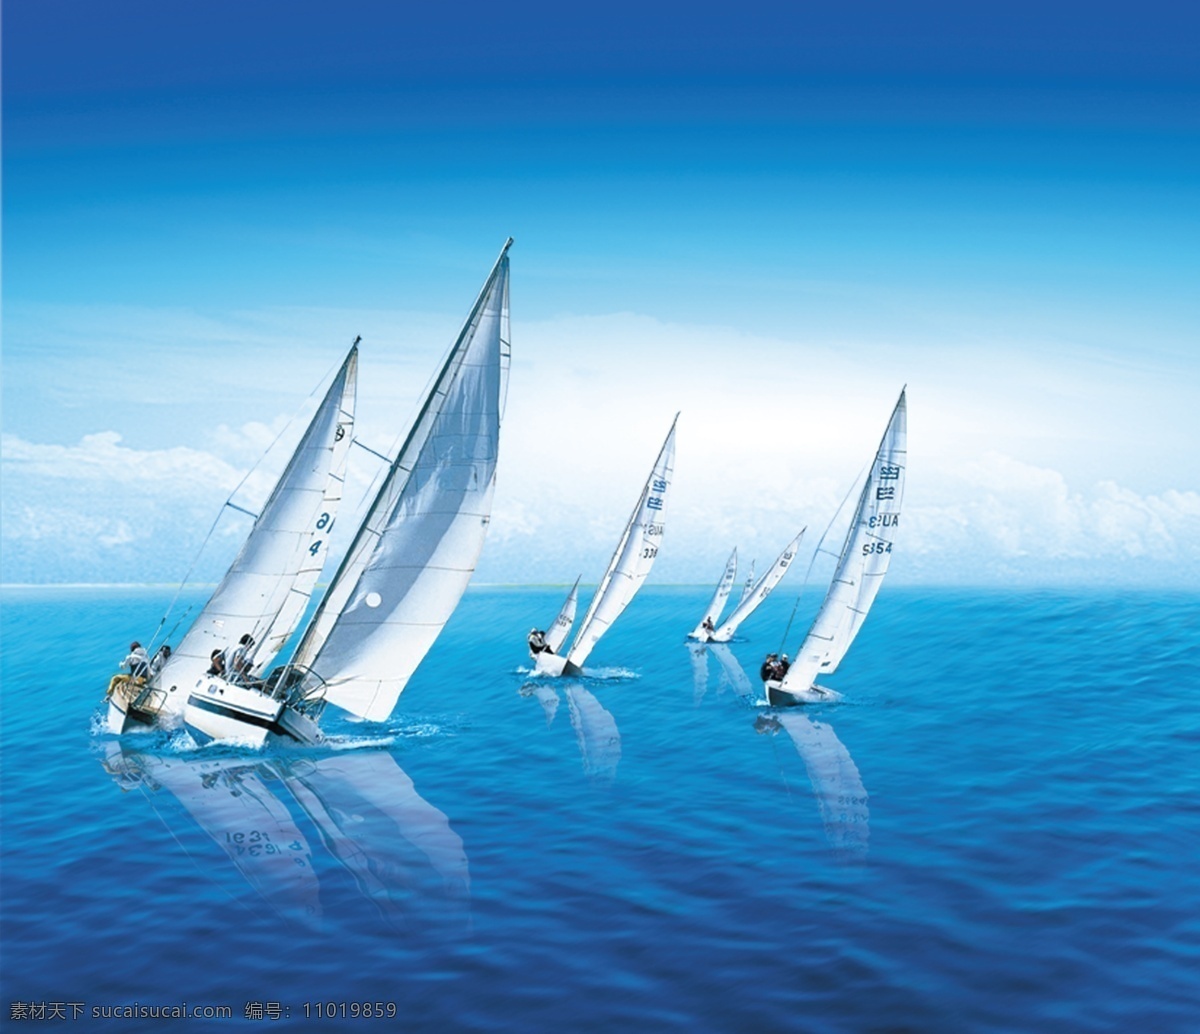 帆船 群帆 海洋 波浪 比赛 天空 企业文化 文化艺术 体育运动